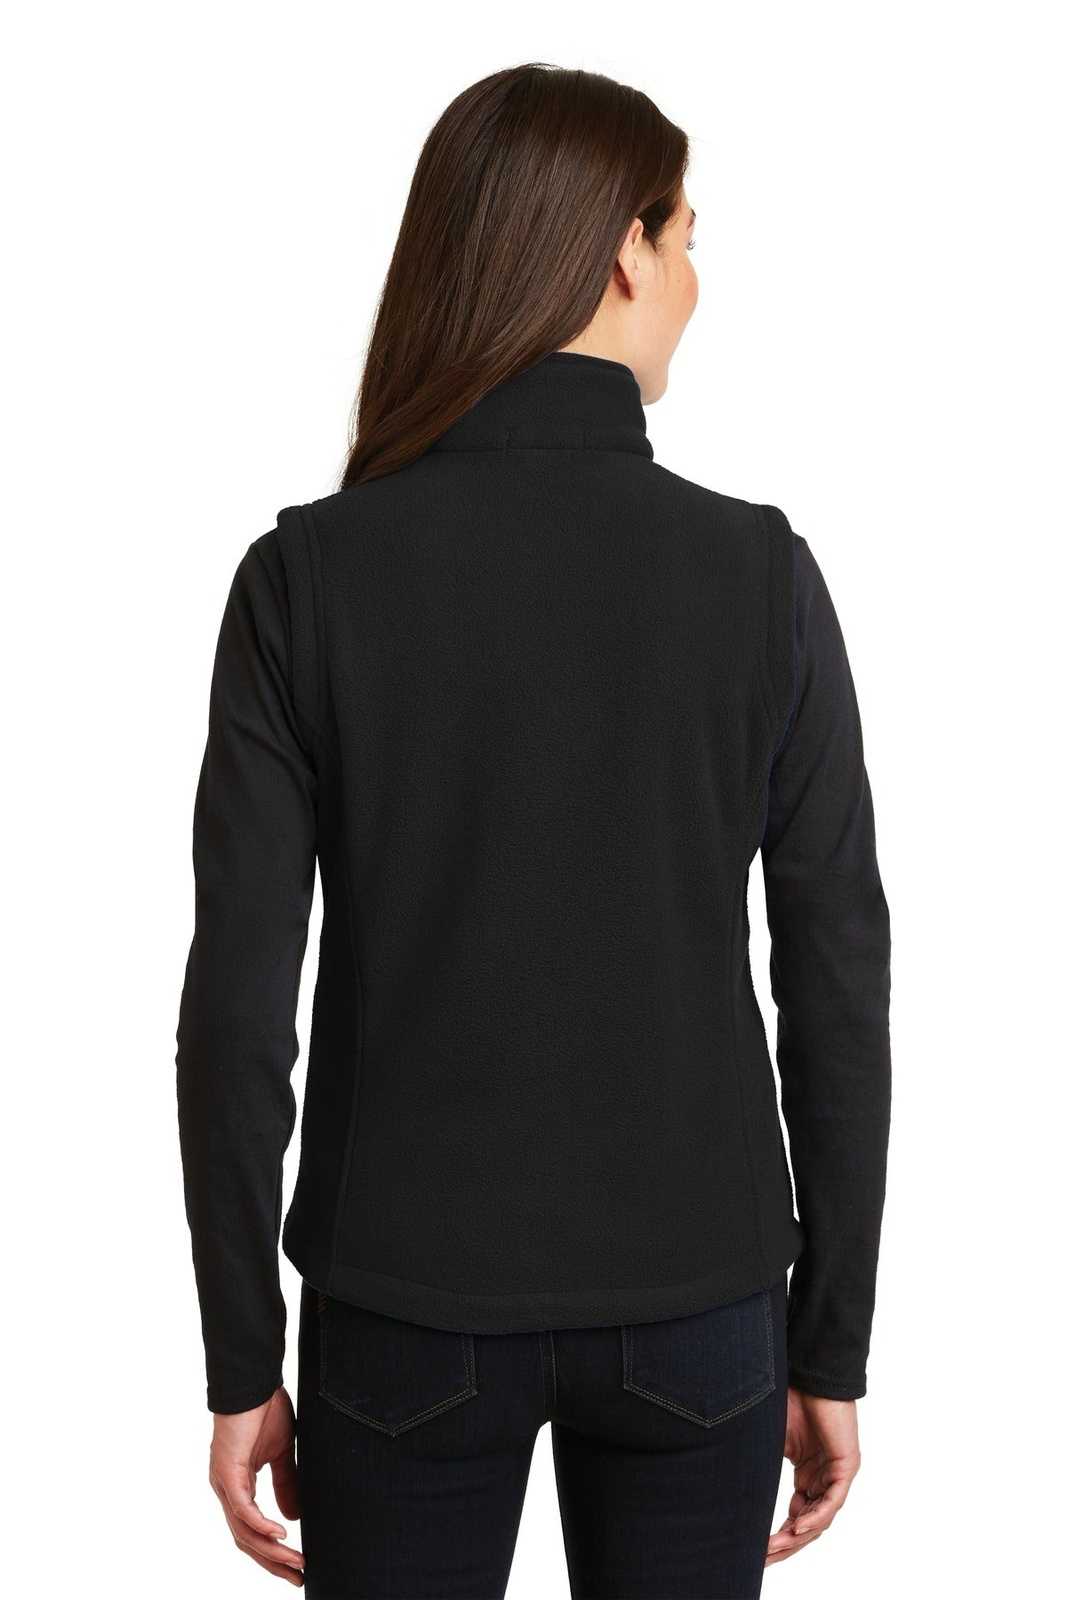 Port Authority L219 Ladies Value Fleece Vest - Black - HIT a Double - 2